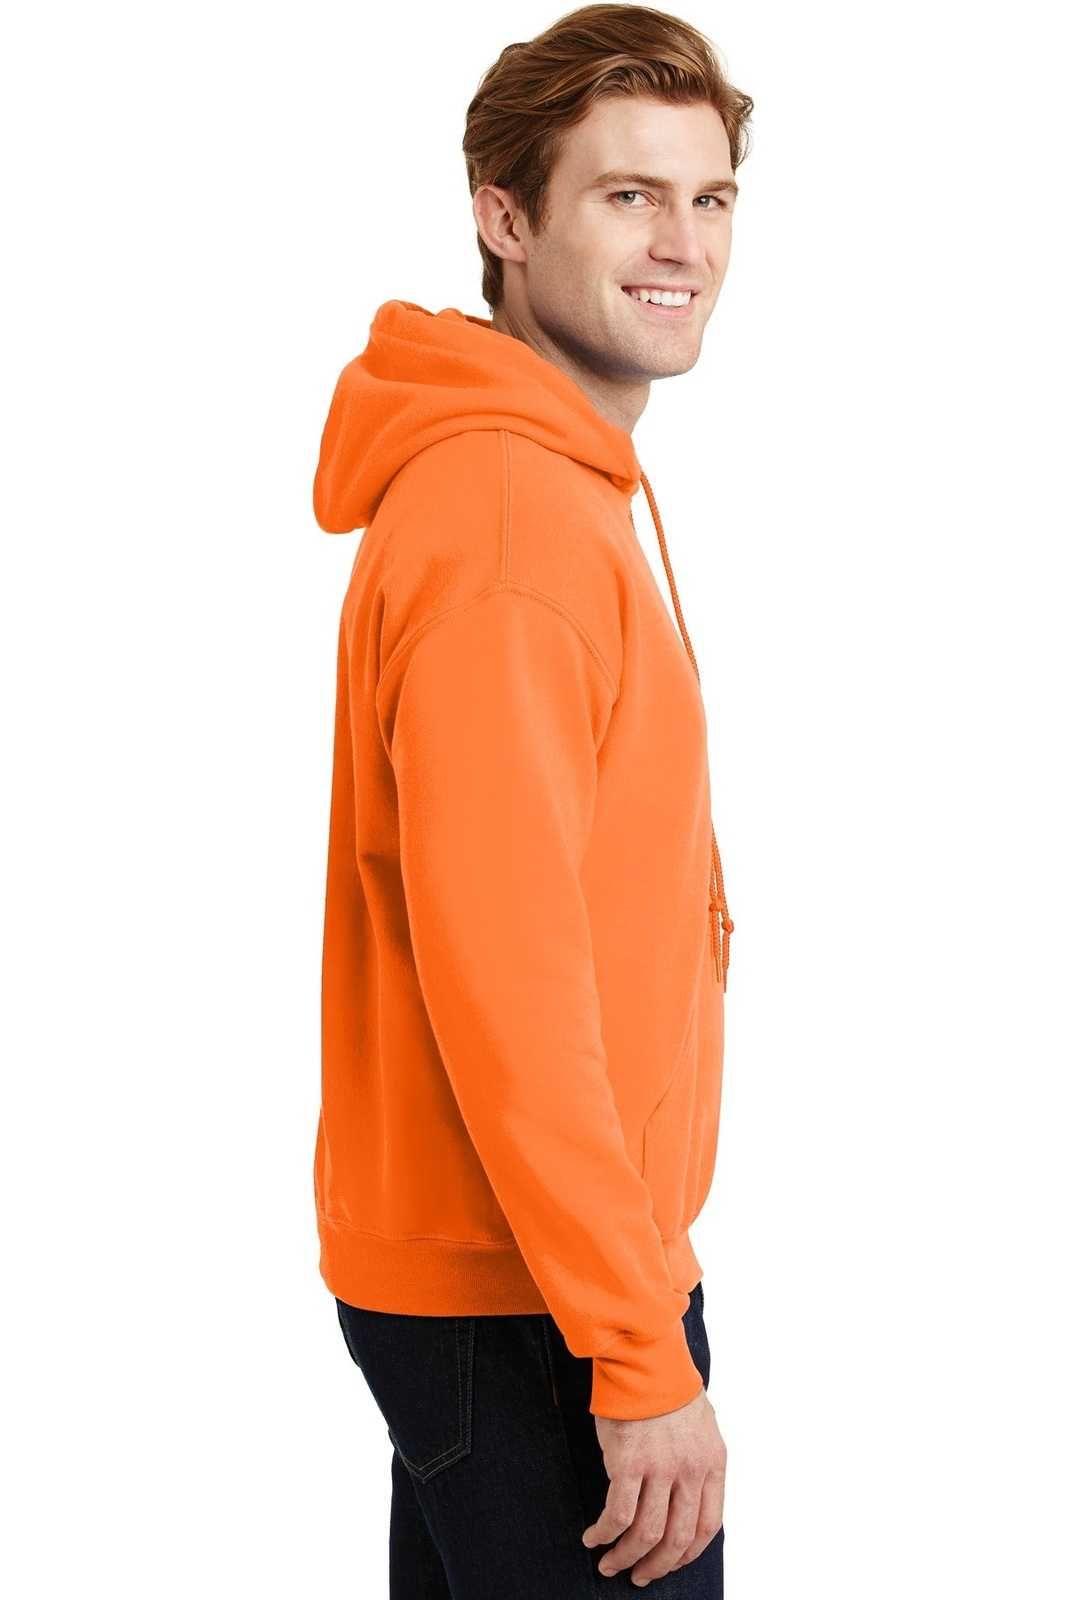 Gildan 18500 Heavy Blend Hooded Sweatshirt - S. Orange - HIT a Double